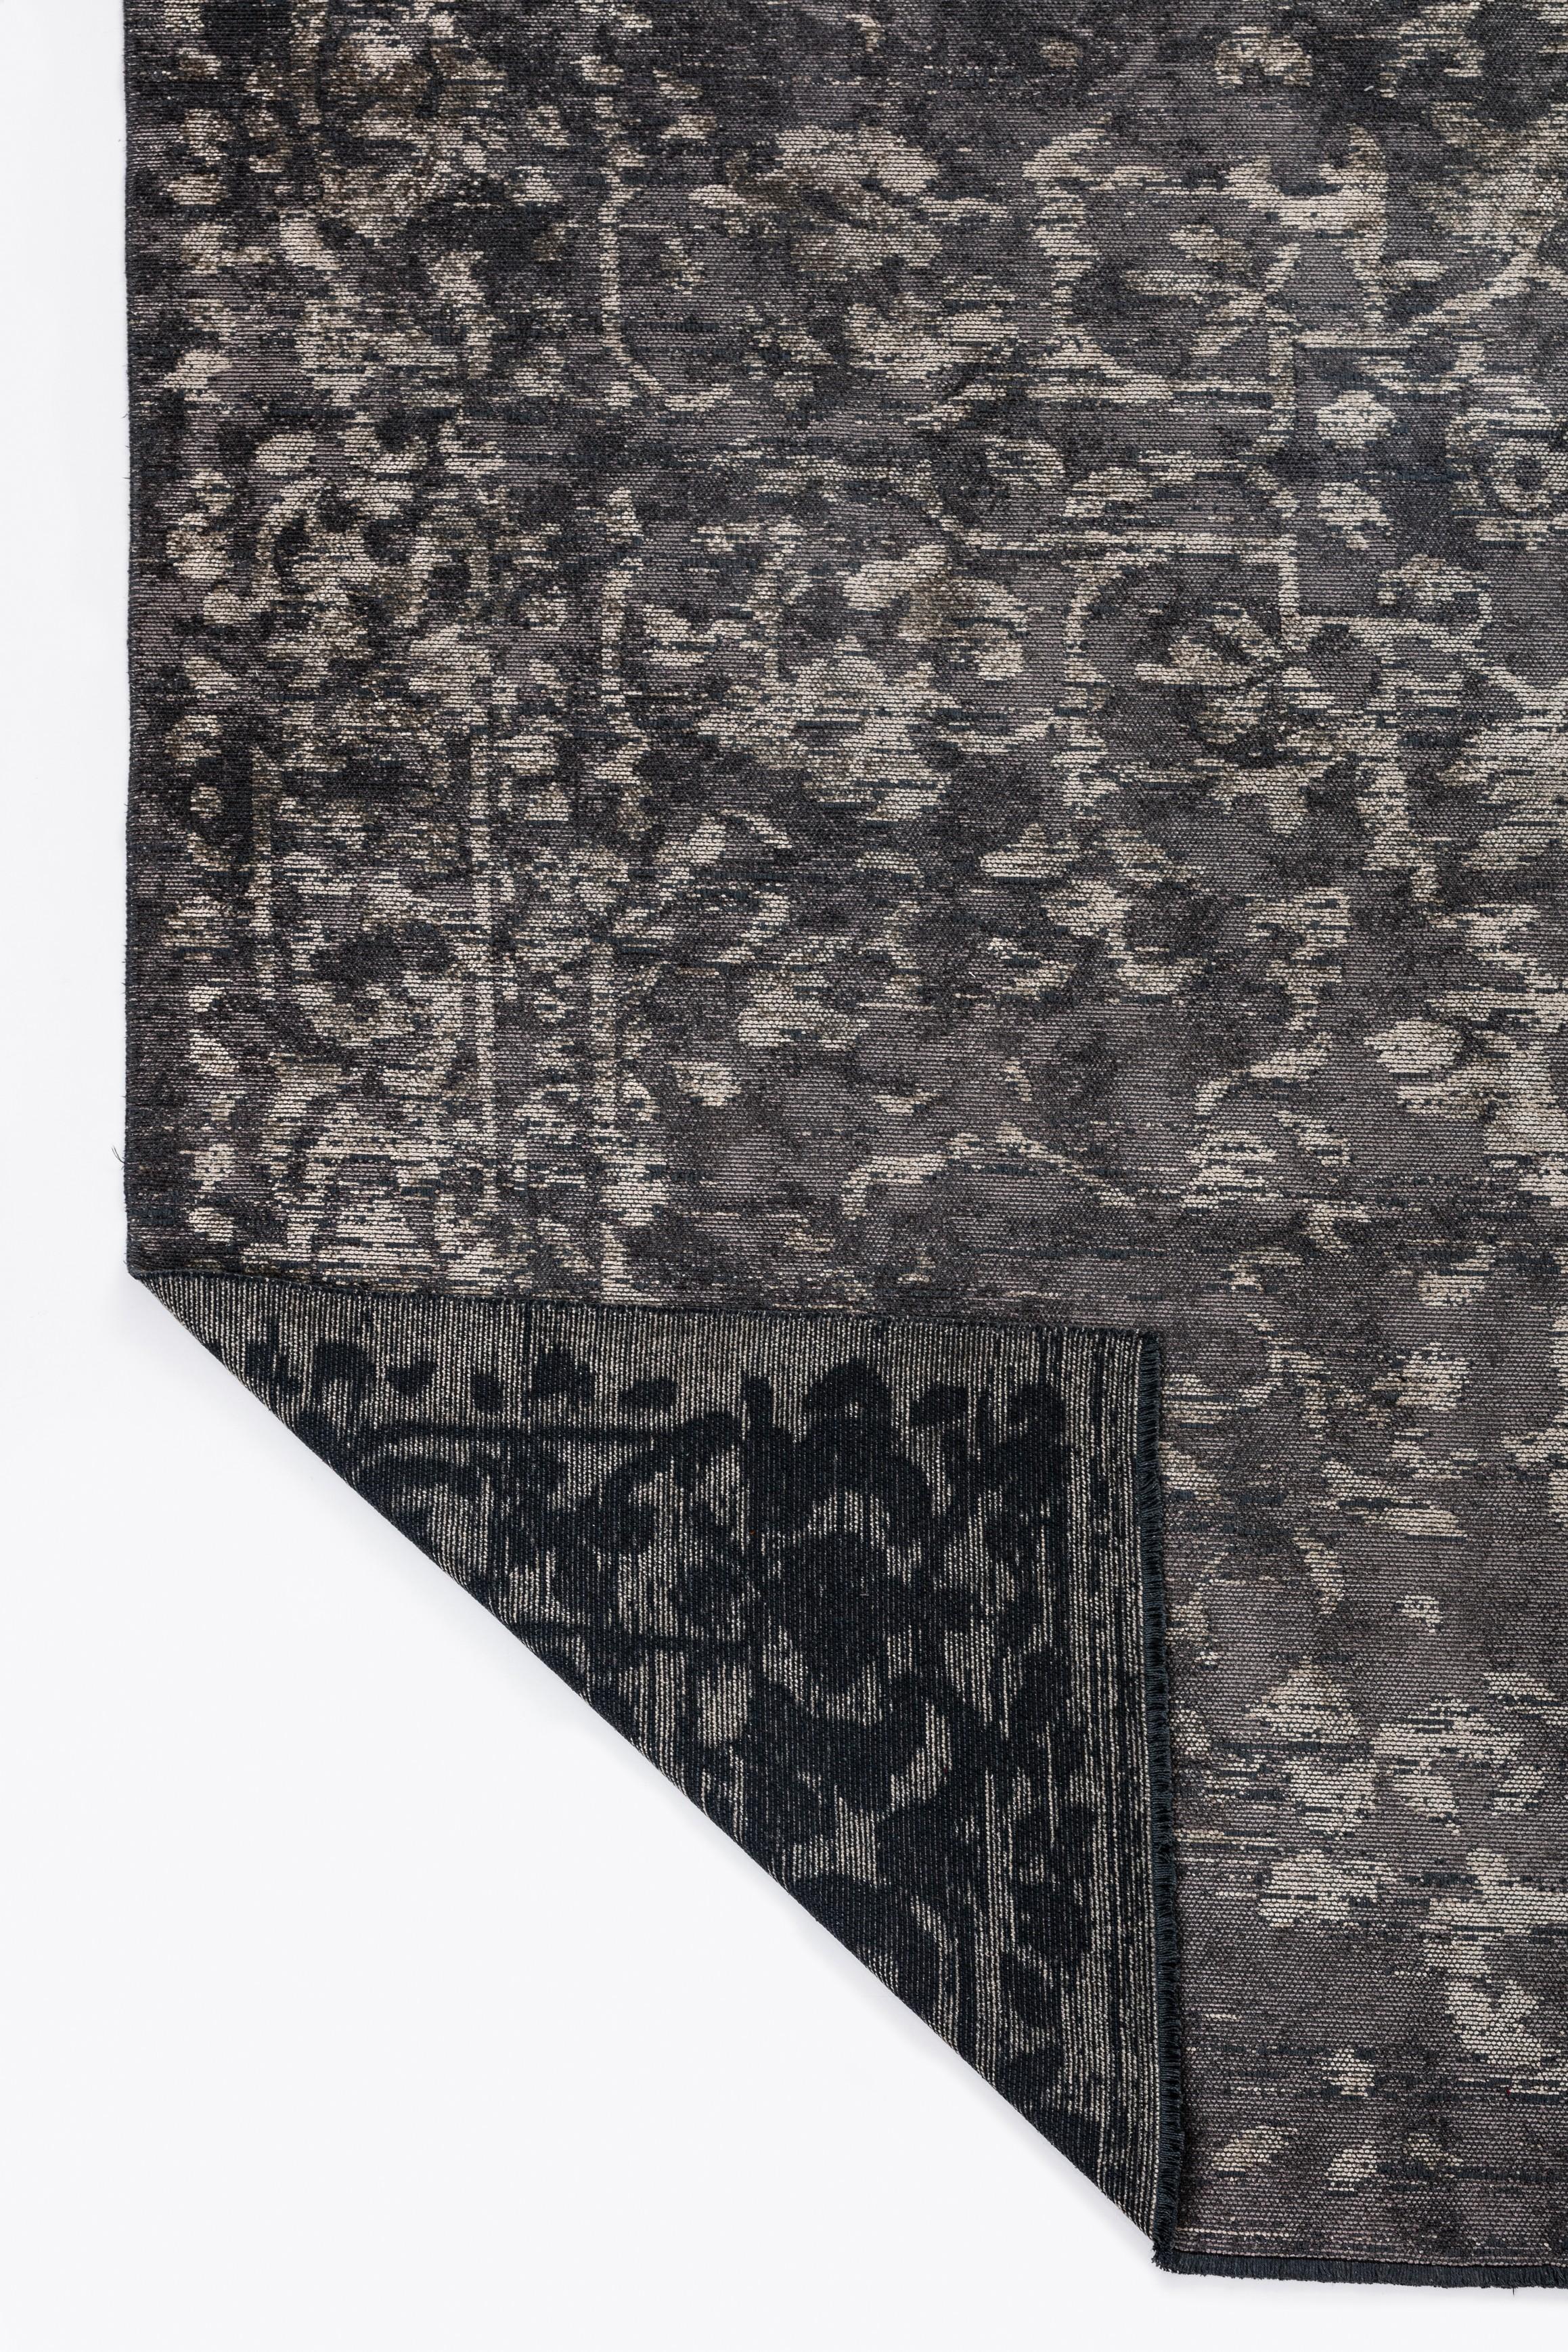 Im Angebot: Traditioneller Orientalischer Luxus-Teppich, handgefertigt,  (Grau) 3